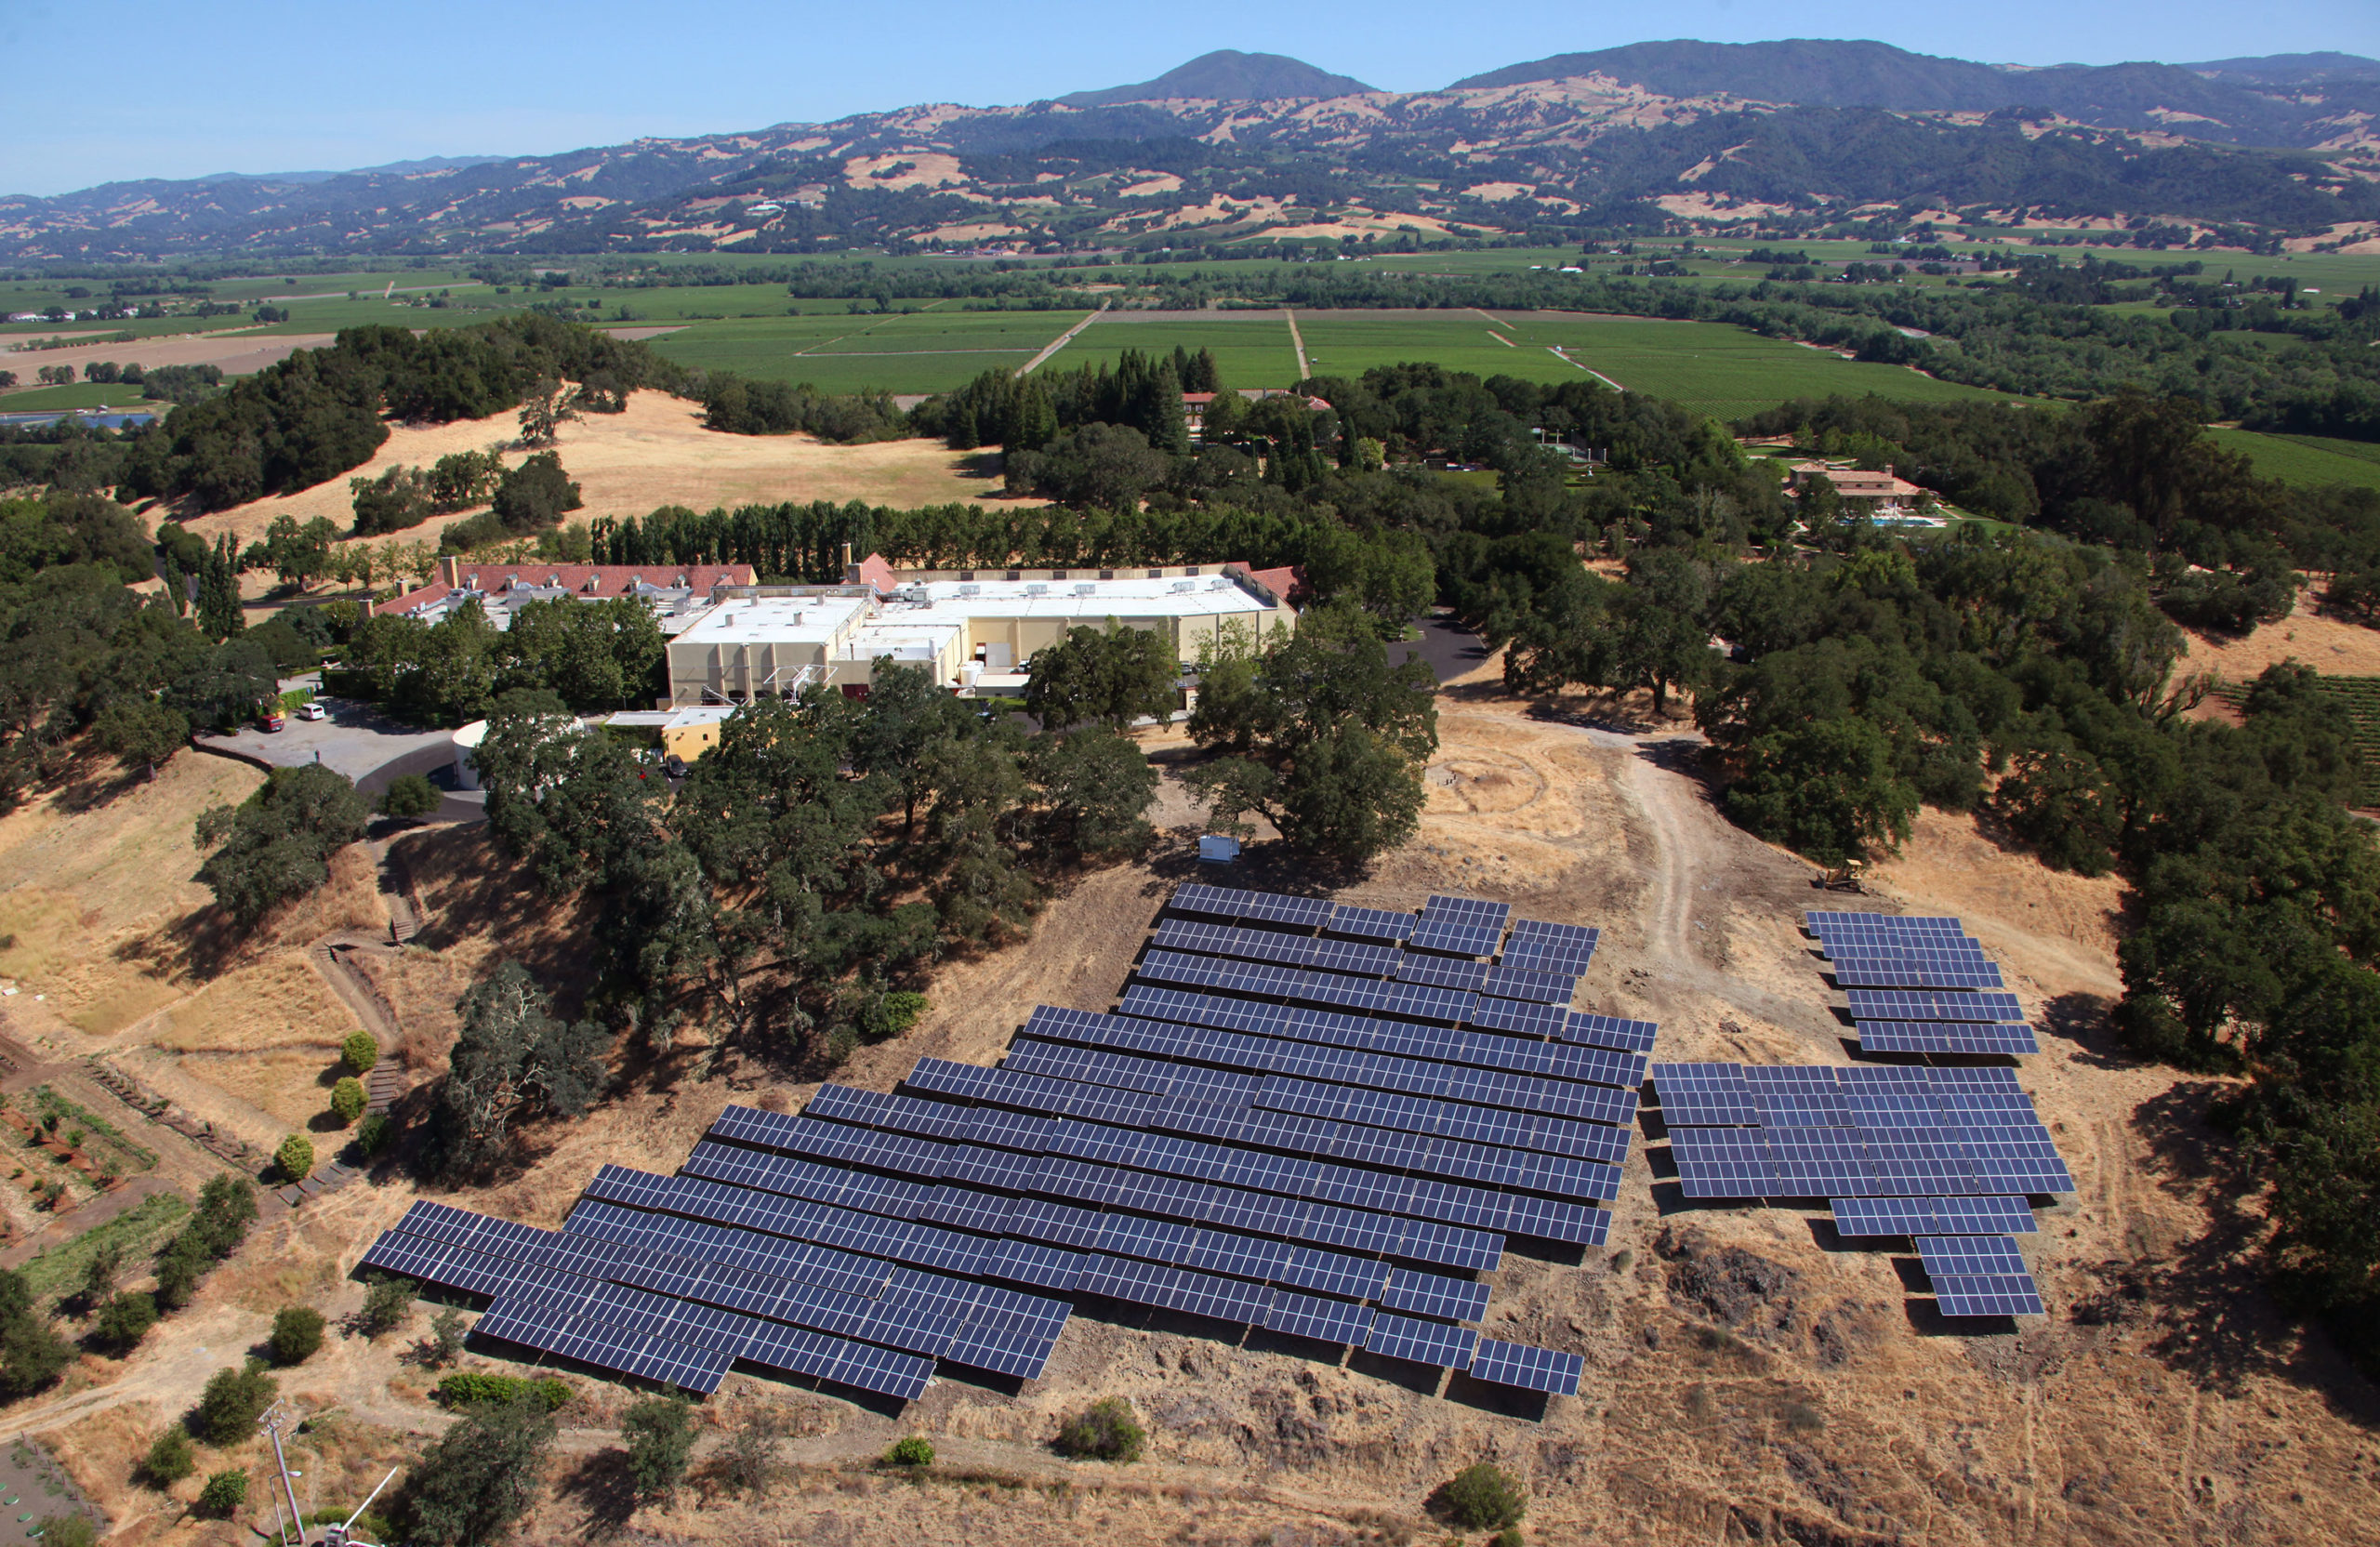 Hillside solar arrays at Jordan Winery